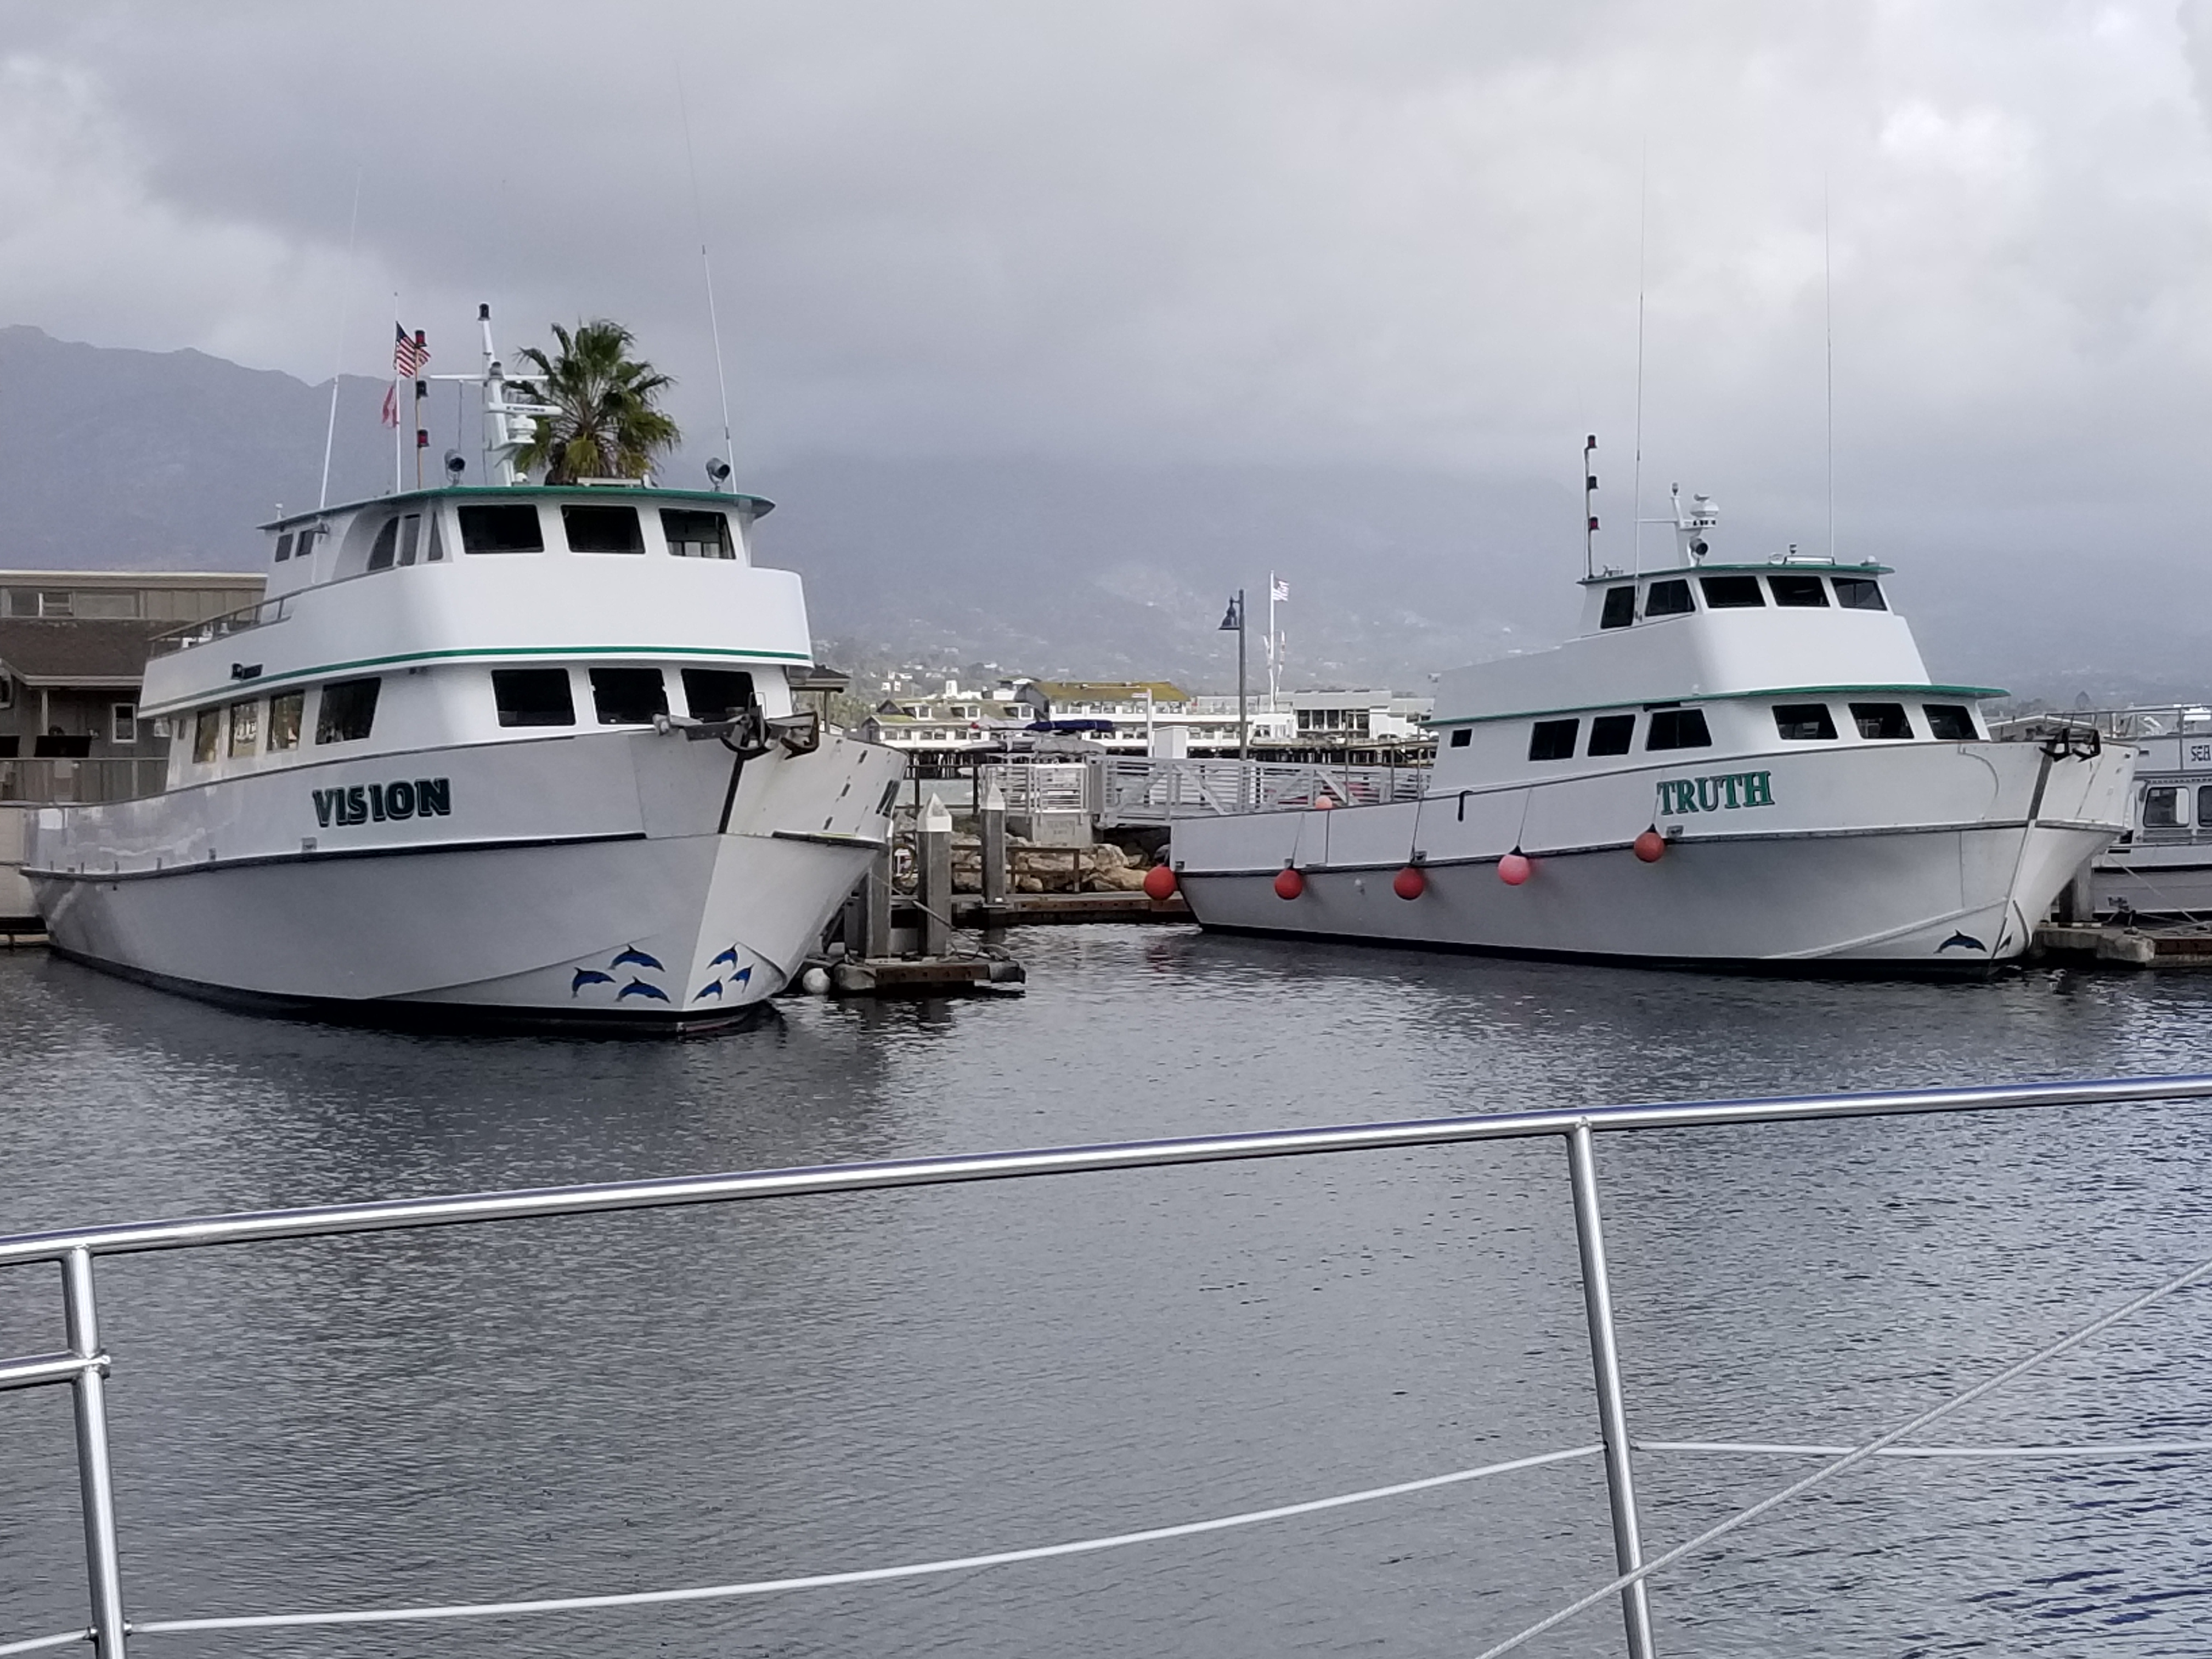 SB Harbor boats